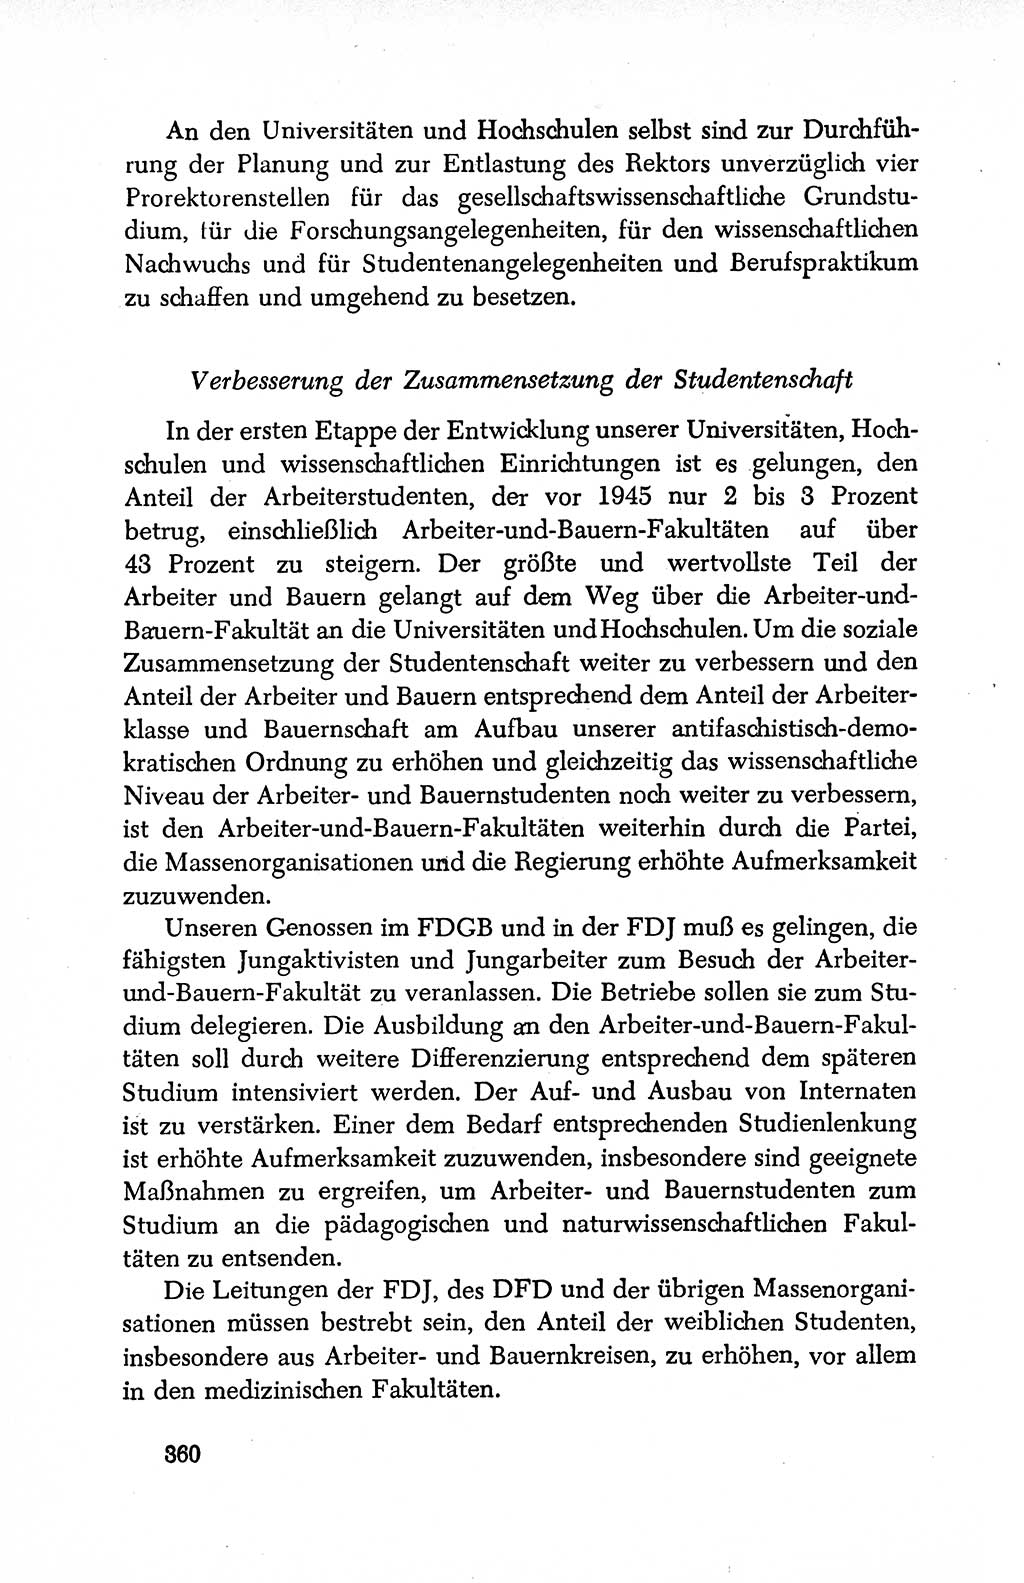 Dokumente der Sozialistischen Einheitspartei Deutschlands (SED) [Deutsche Demokratische Republik (DDR)] 1950-1952, Seite 360 (Dok. SED DDR 1950-1952, S. 360)